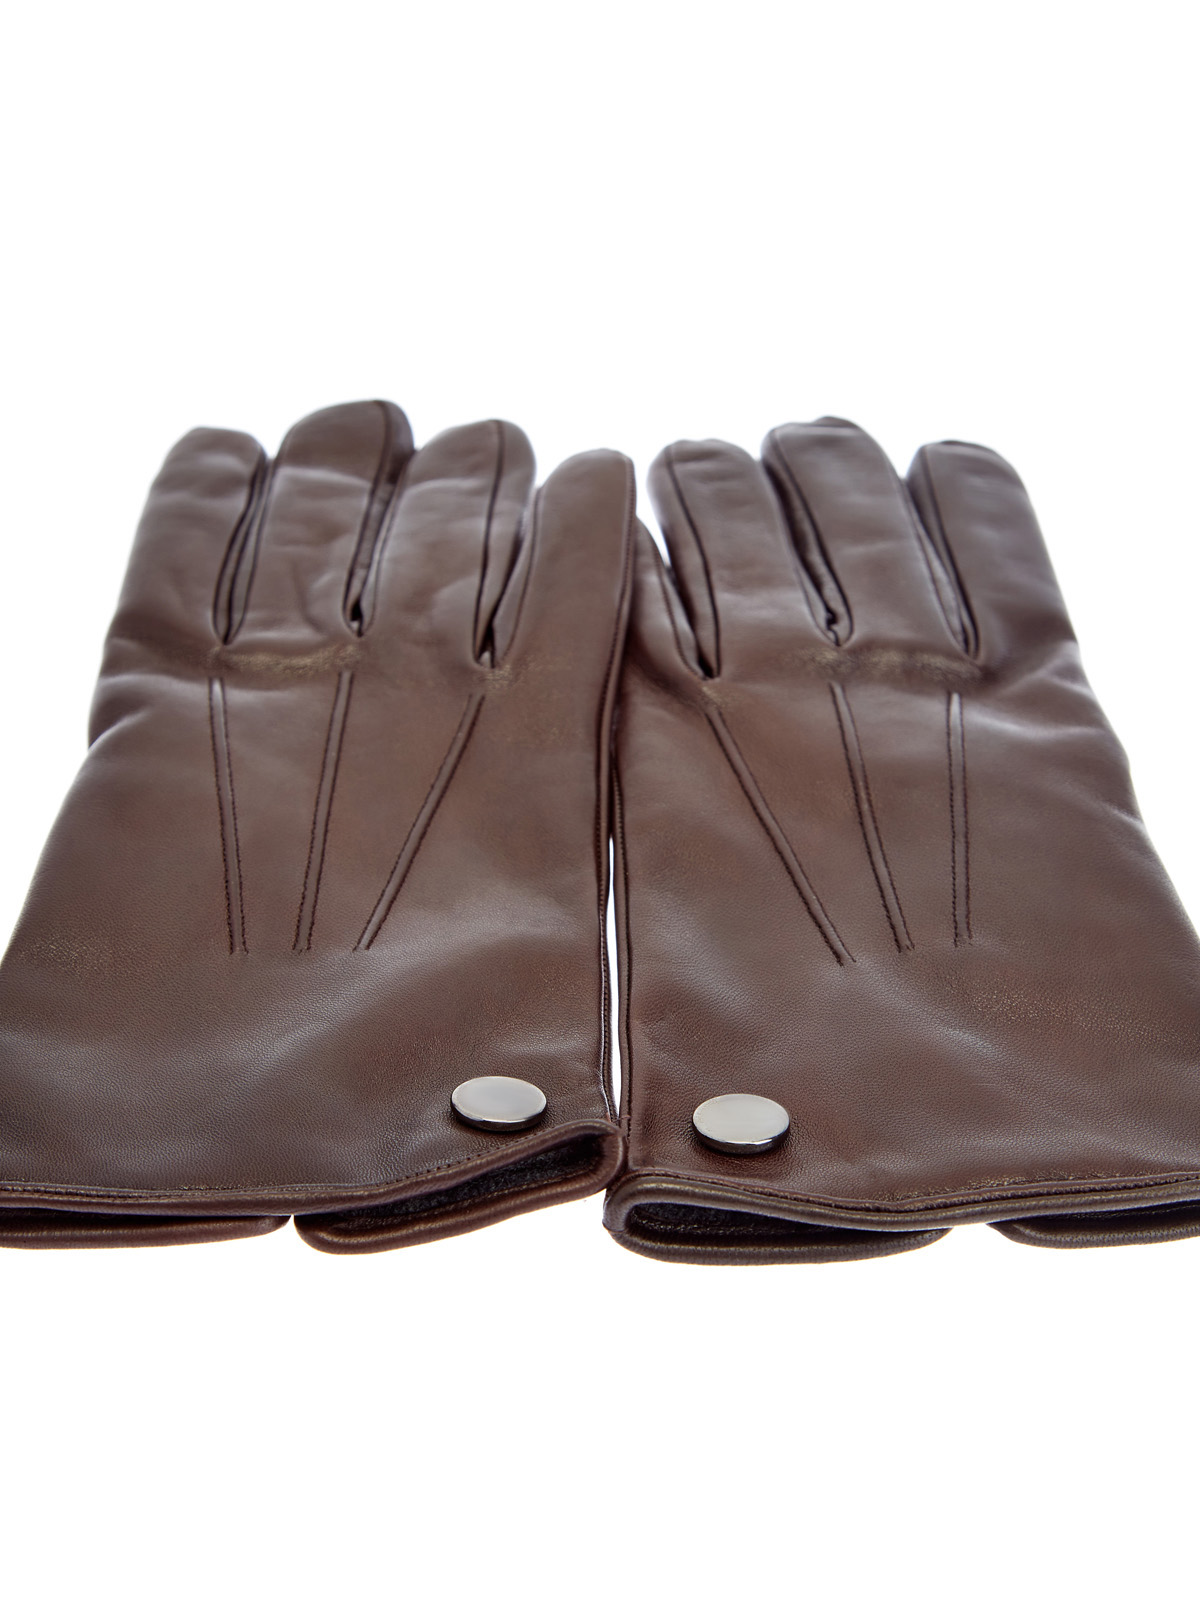 Перчатки ручной работы из кожи ягненка и кашемира MORESCHI, цвет коричневый, размер L;XS;S;M - фото 2